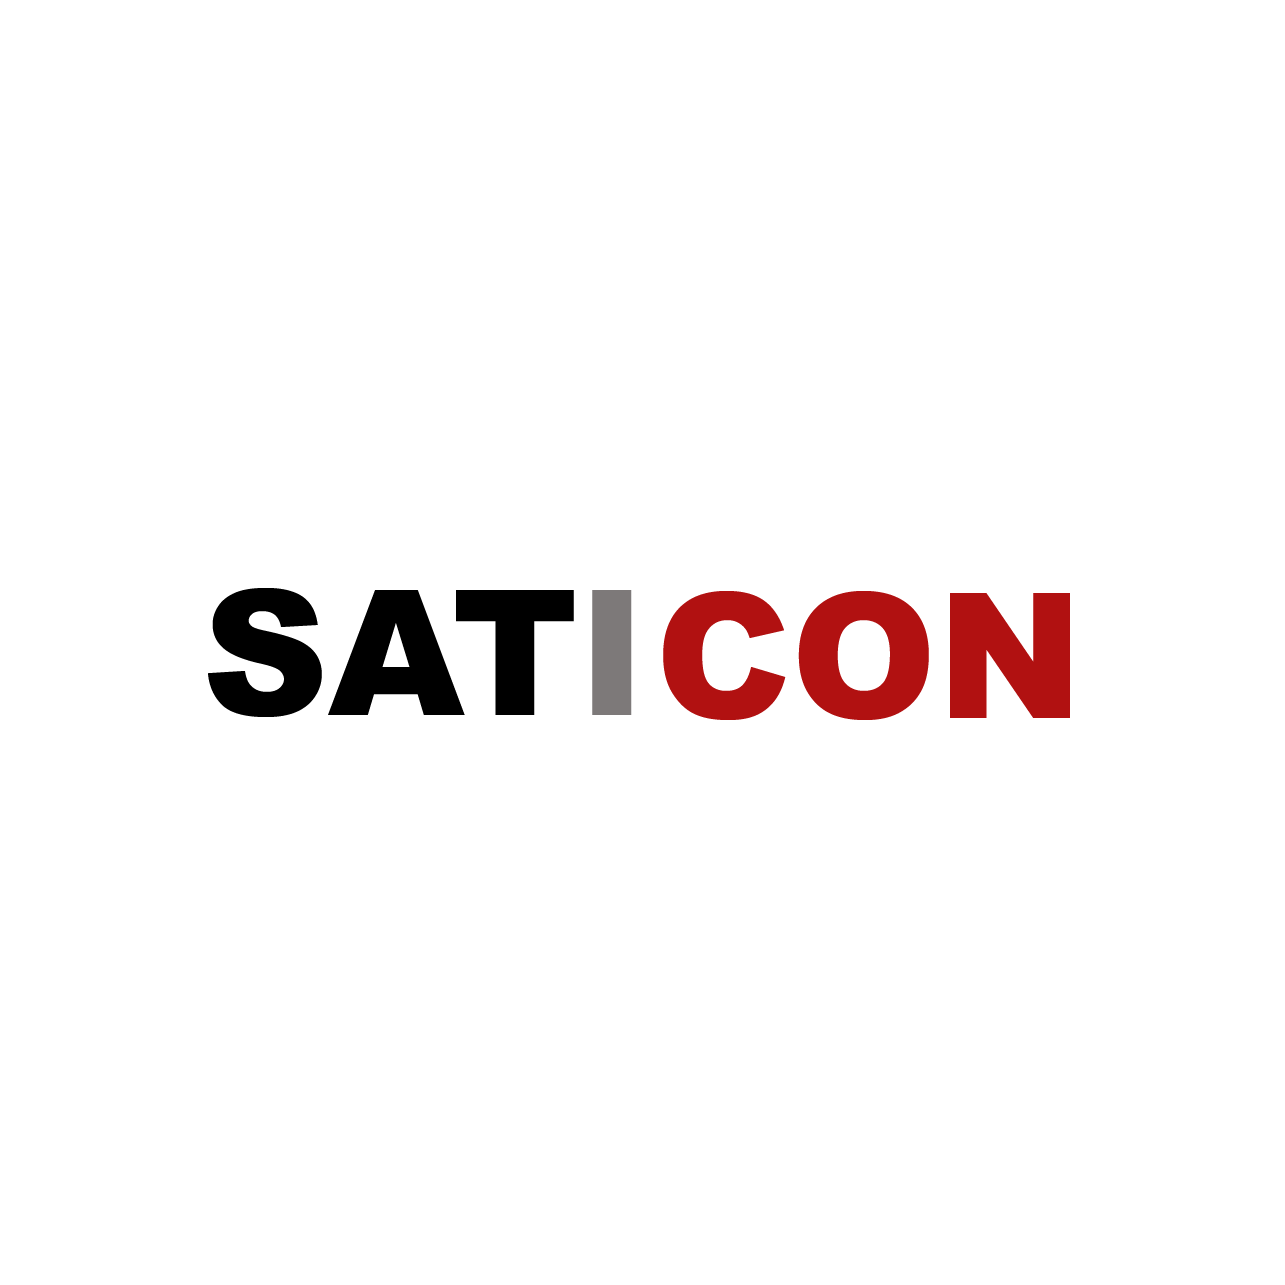 Das Logo von der Saticon GmbH